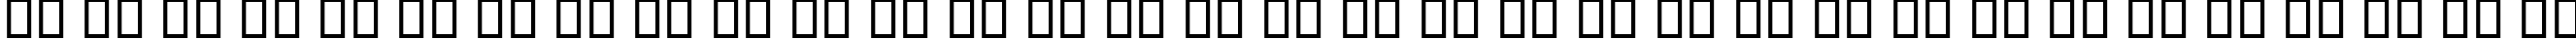 Пример написания русского алфавита шрифтом B Rose